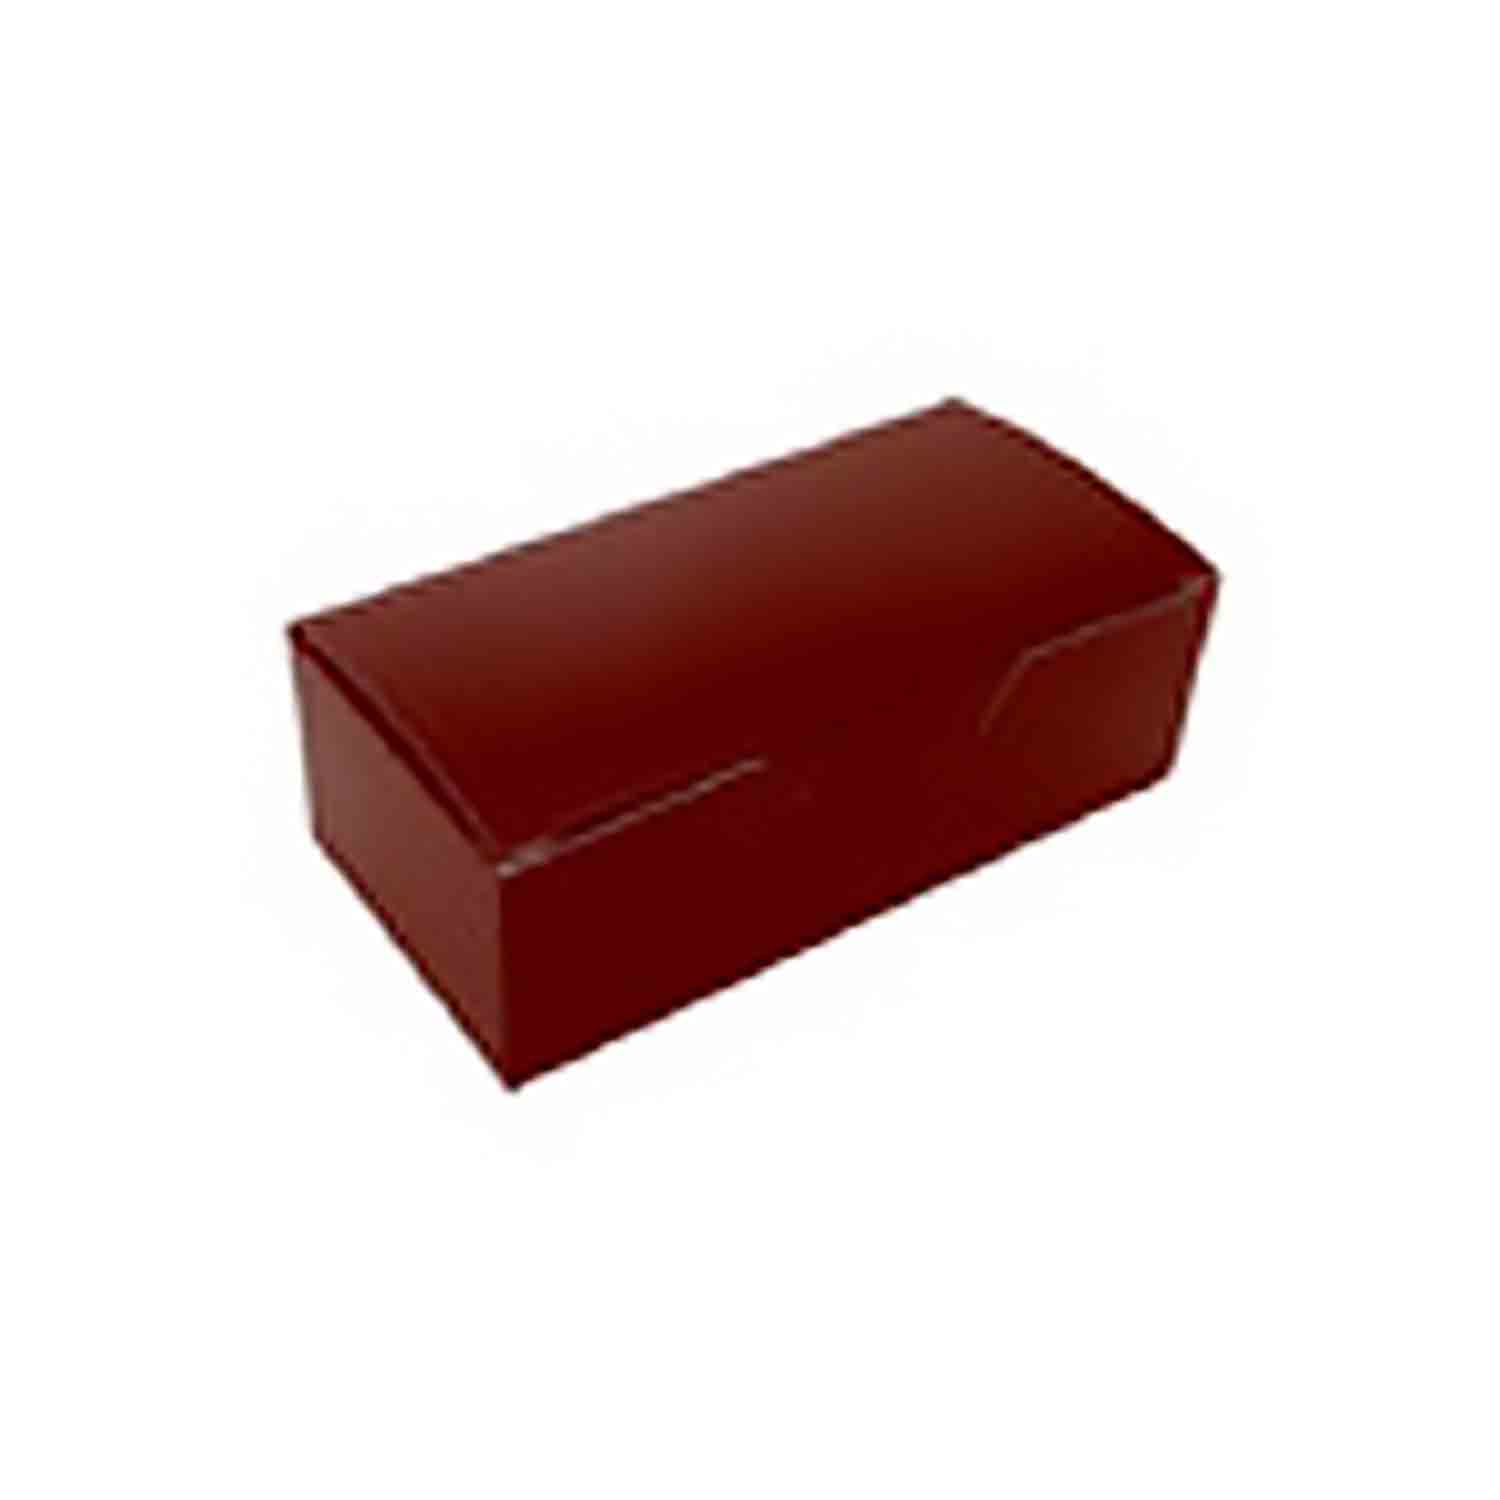 1/2 lb Brown Candy Box - 1pc